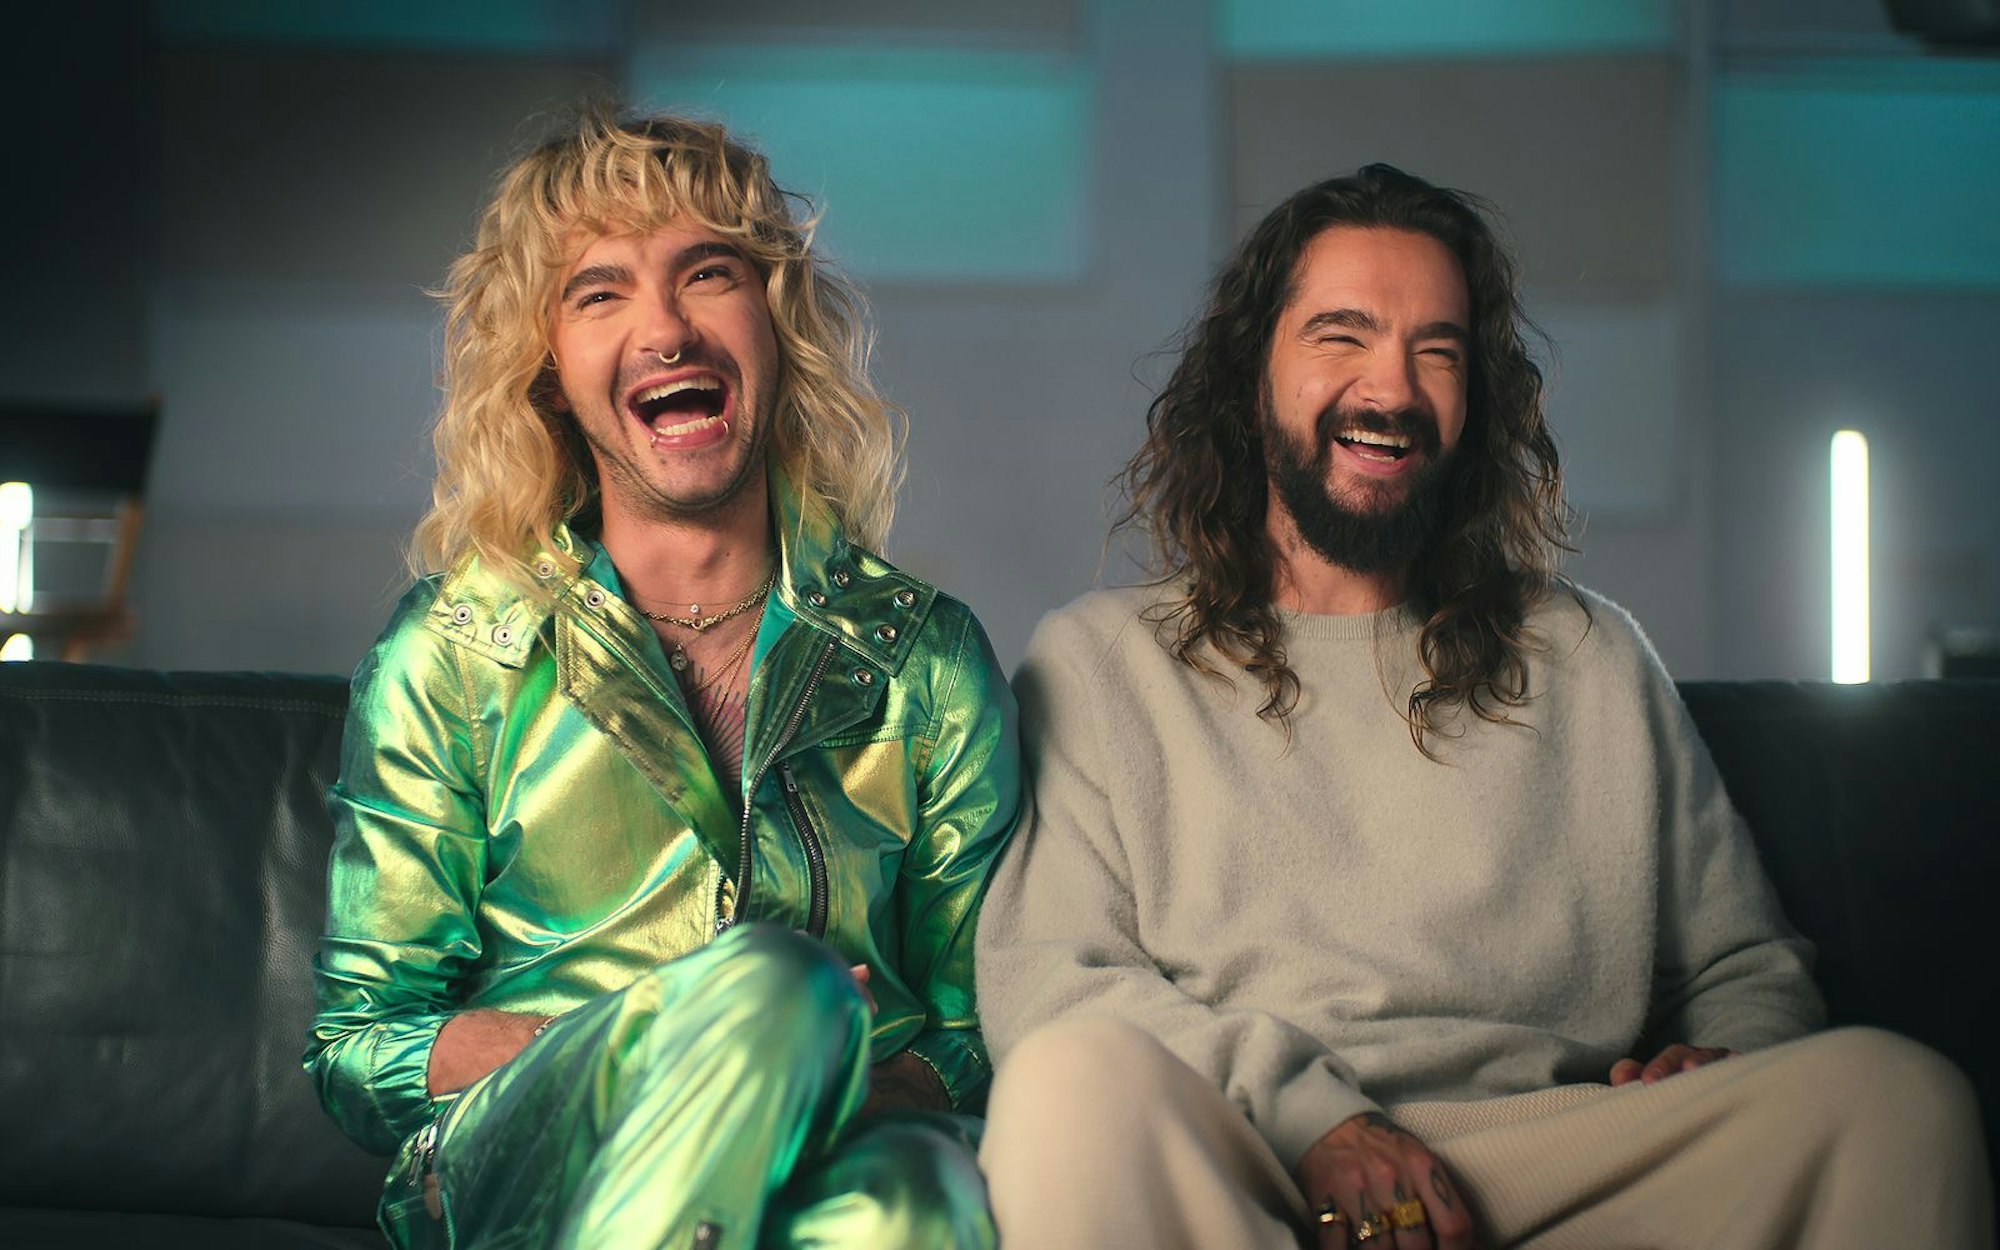 Bill (links) und Tom Kaulitz wurden mit ihrer Band Tokio Hotel berühmt. In der Netflix-Realityserie „Kaulitz & Kaulitz“ gewähren sie nun Einblick in ihre eigenen vier Wände. (Bild: Netflix)